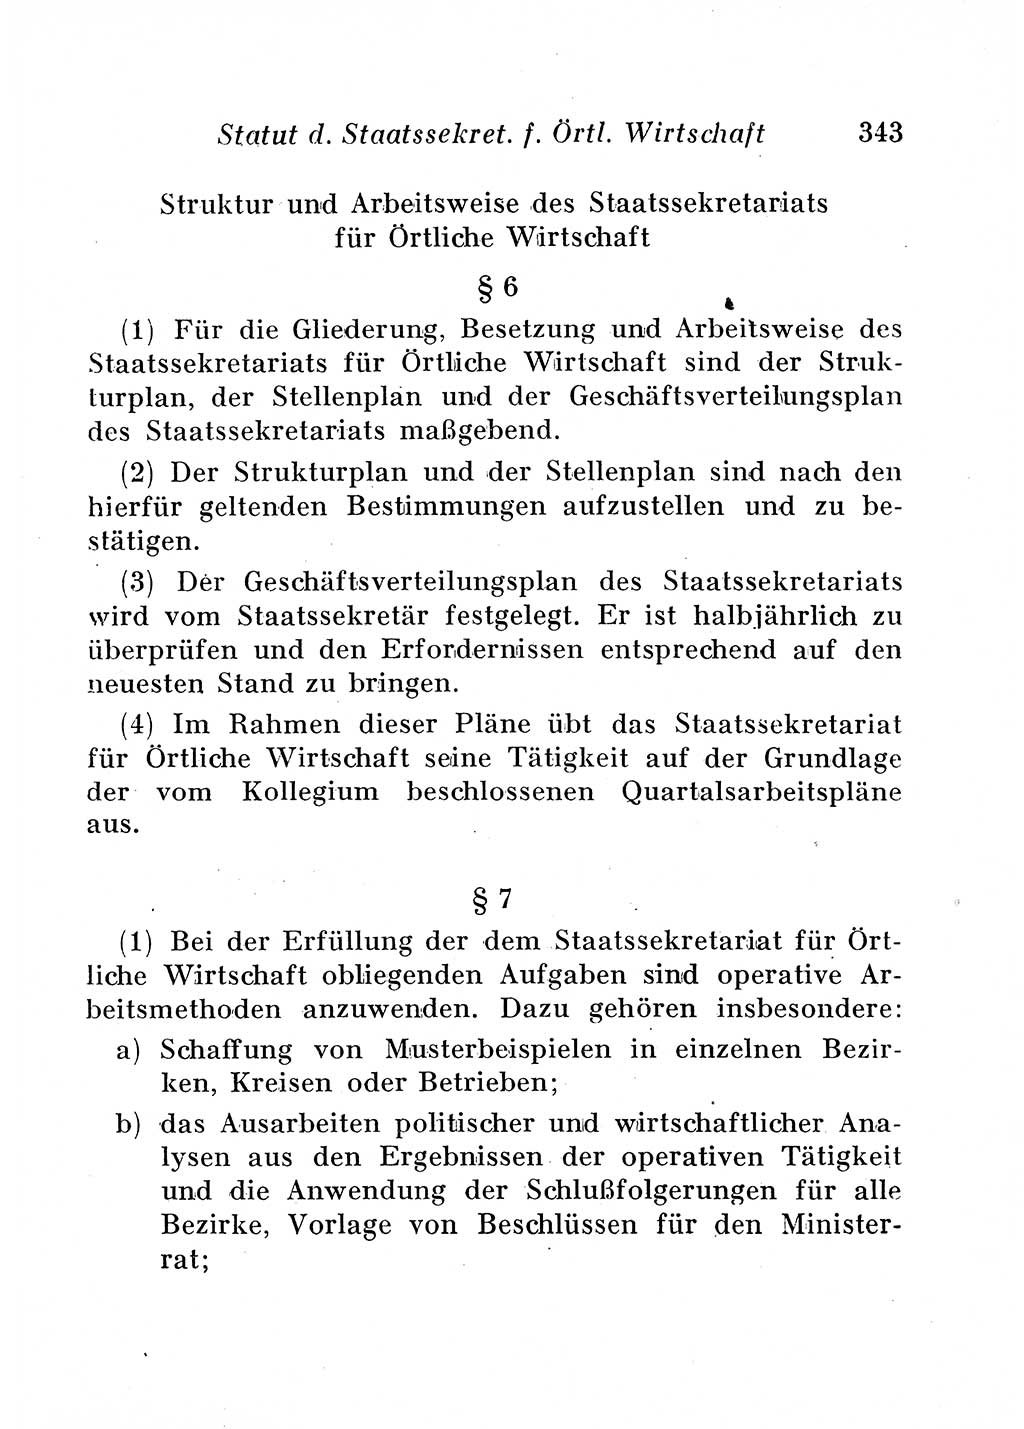 Staats- und verwaltungsrechtliche Gesetze der Deutschen Demokratischen Republik (DDR) 1958, Seite 343 (StVerwR Ges. DDR 1958, S. 343)